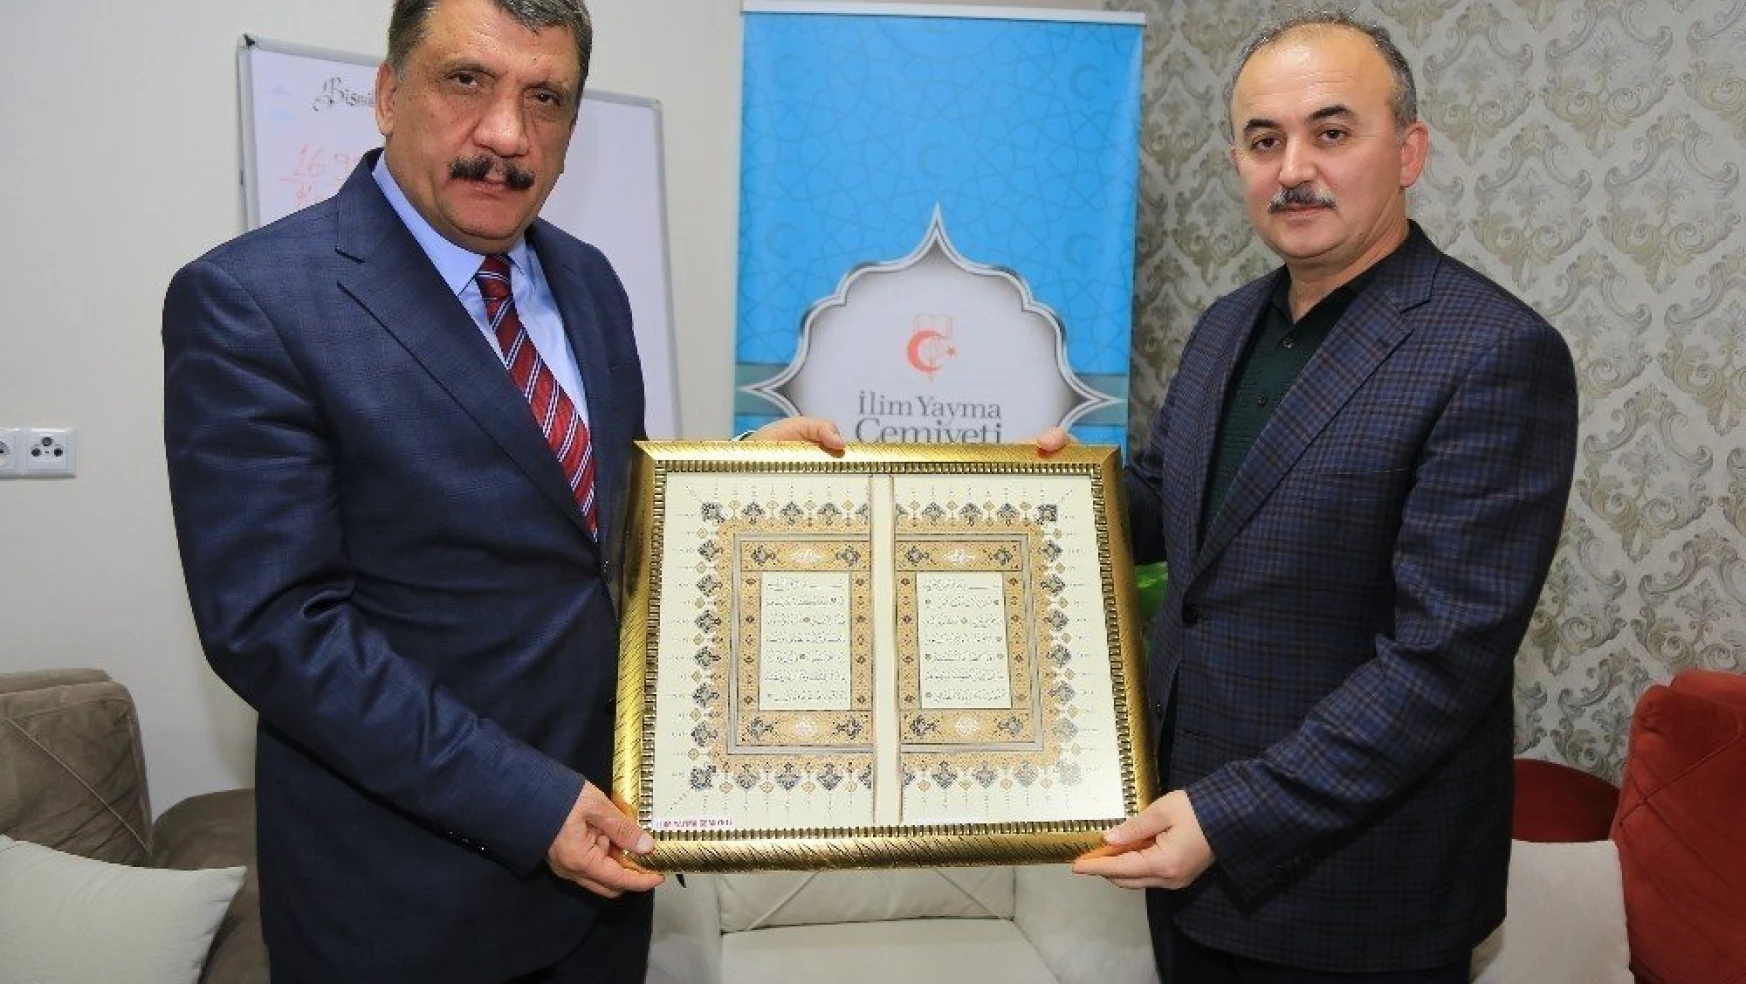 İlim Yayma Cemiyeti Malatya Şubesi'nden Gürkan'ın çalışmalarına övgü
